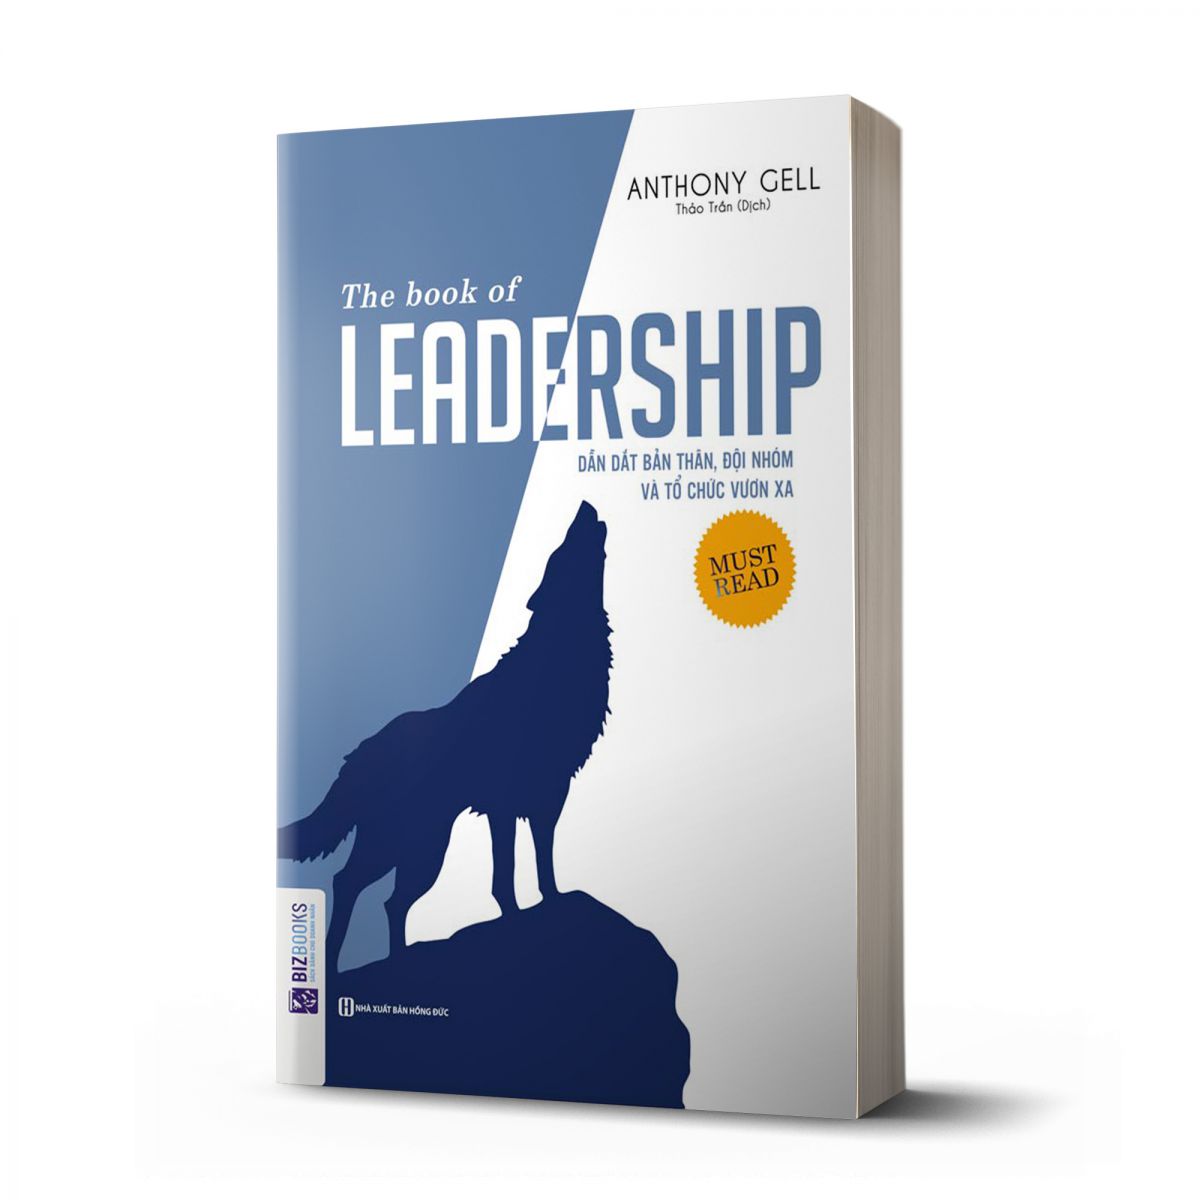 Bộ 10 cuốn sách lãnh đạo bán chạy nhất - Cẩm nang bí mật giúp bạn trở thành một nhà lãnh đạo tài ba nt (The book of Leadership - Dẫn dắt bản thân, đội nhóm và tổ chức vươn xa ,100 phương pháp truyền động lực cho đội nhóm chiến thắng ,Đội Xuất Sắc Nhất Già